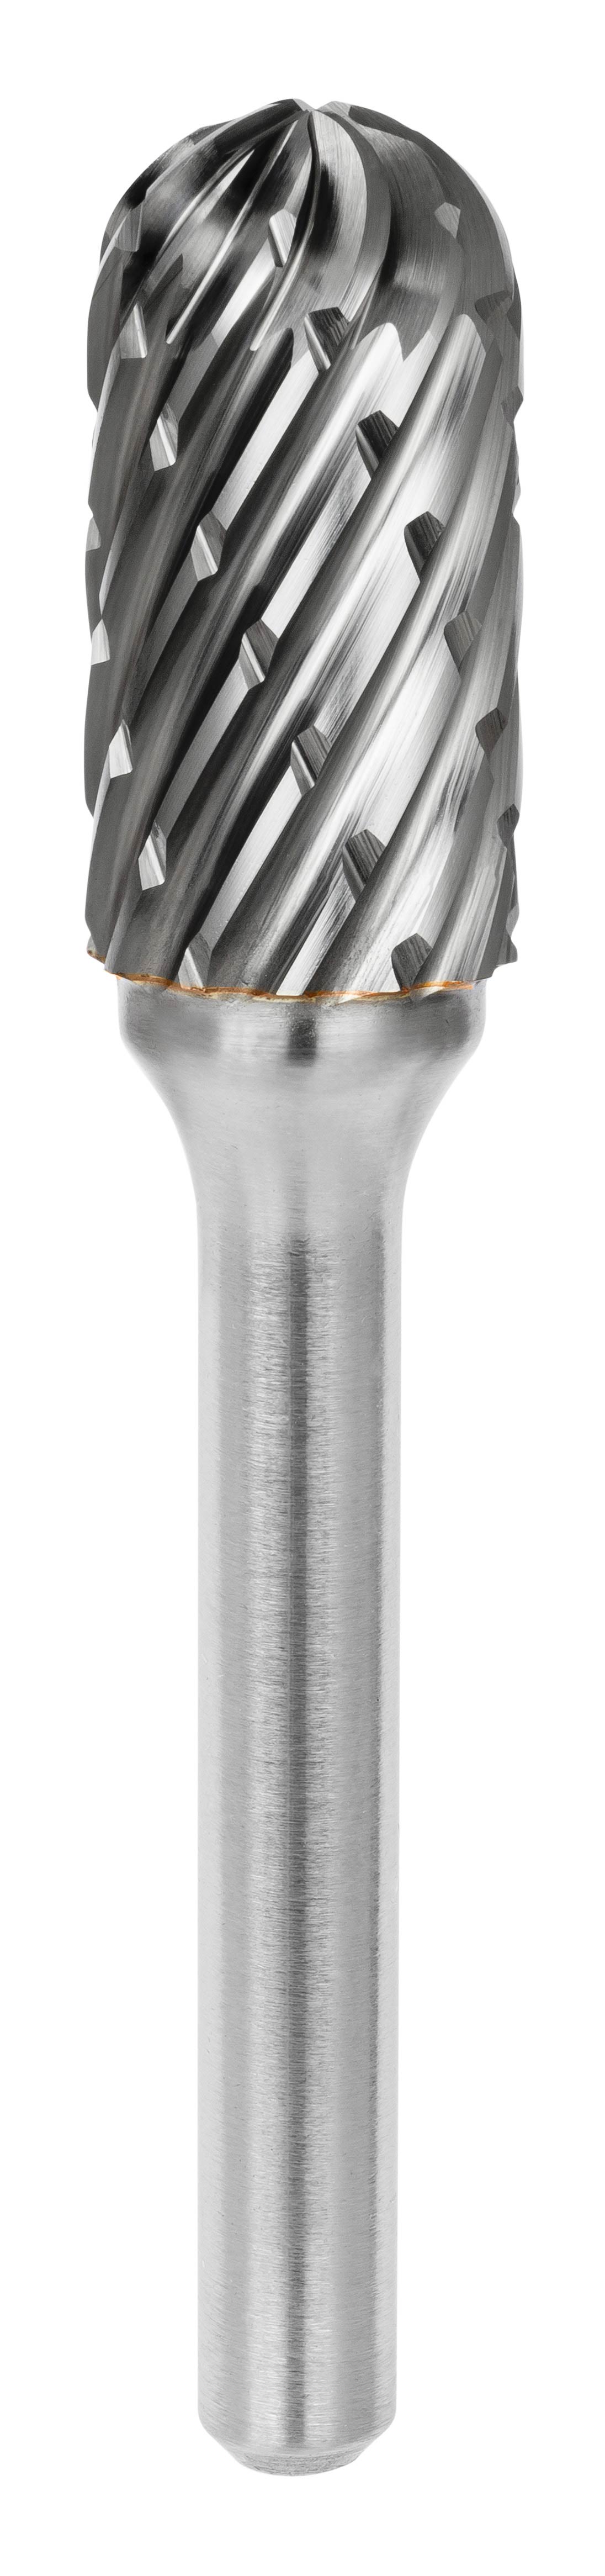 SCHILL: 642 Fraise lime carbure cylindrique bout rond avec denture croisée  Ø3,2 mm - Coupe A